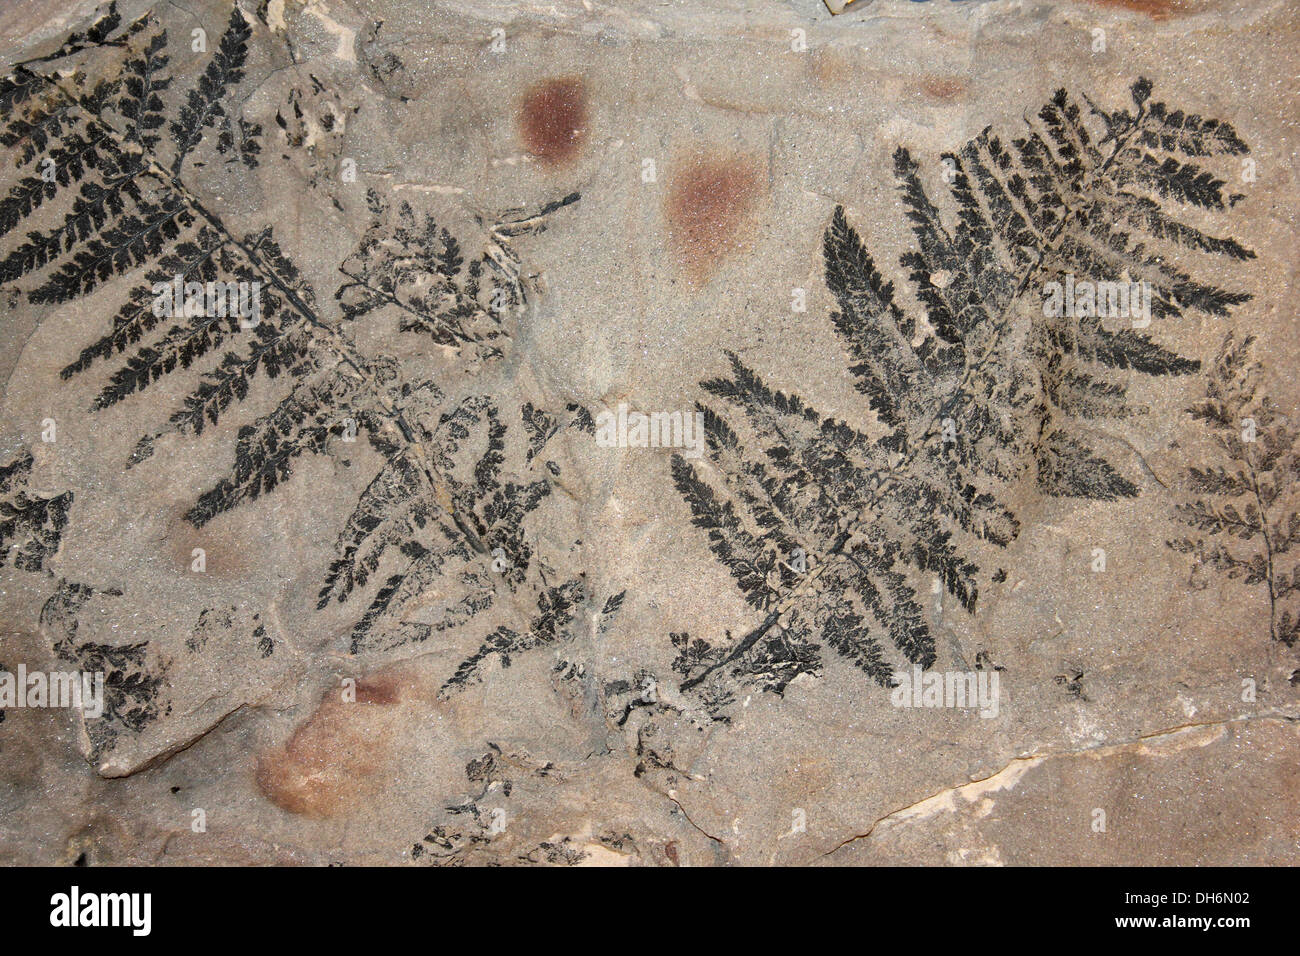 Coniopteris fossile Fougère, Whitby, dans le Yorkshire, UK Banque D'Images